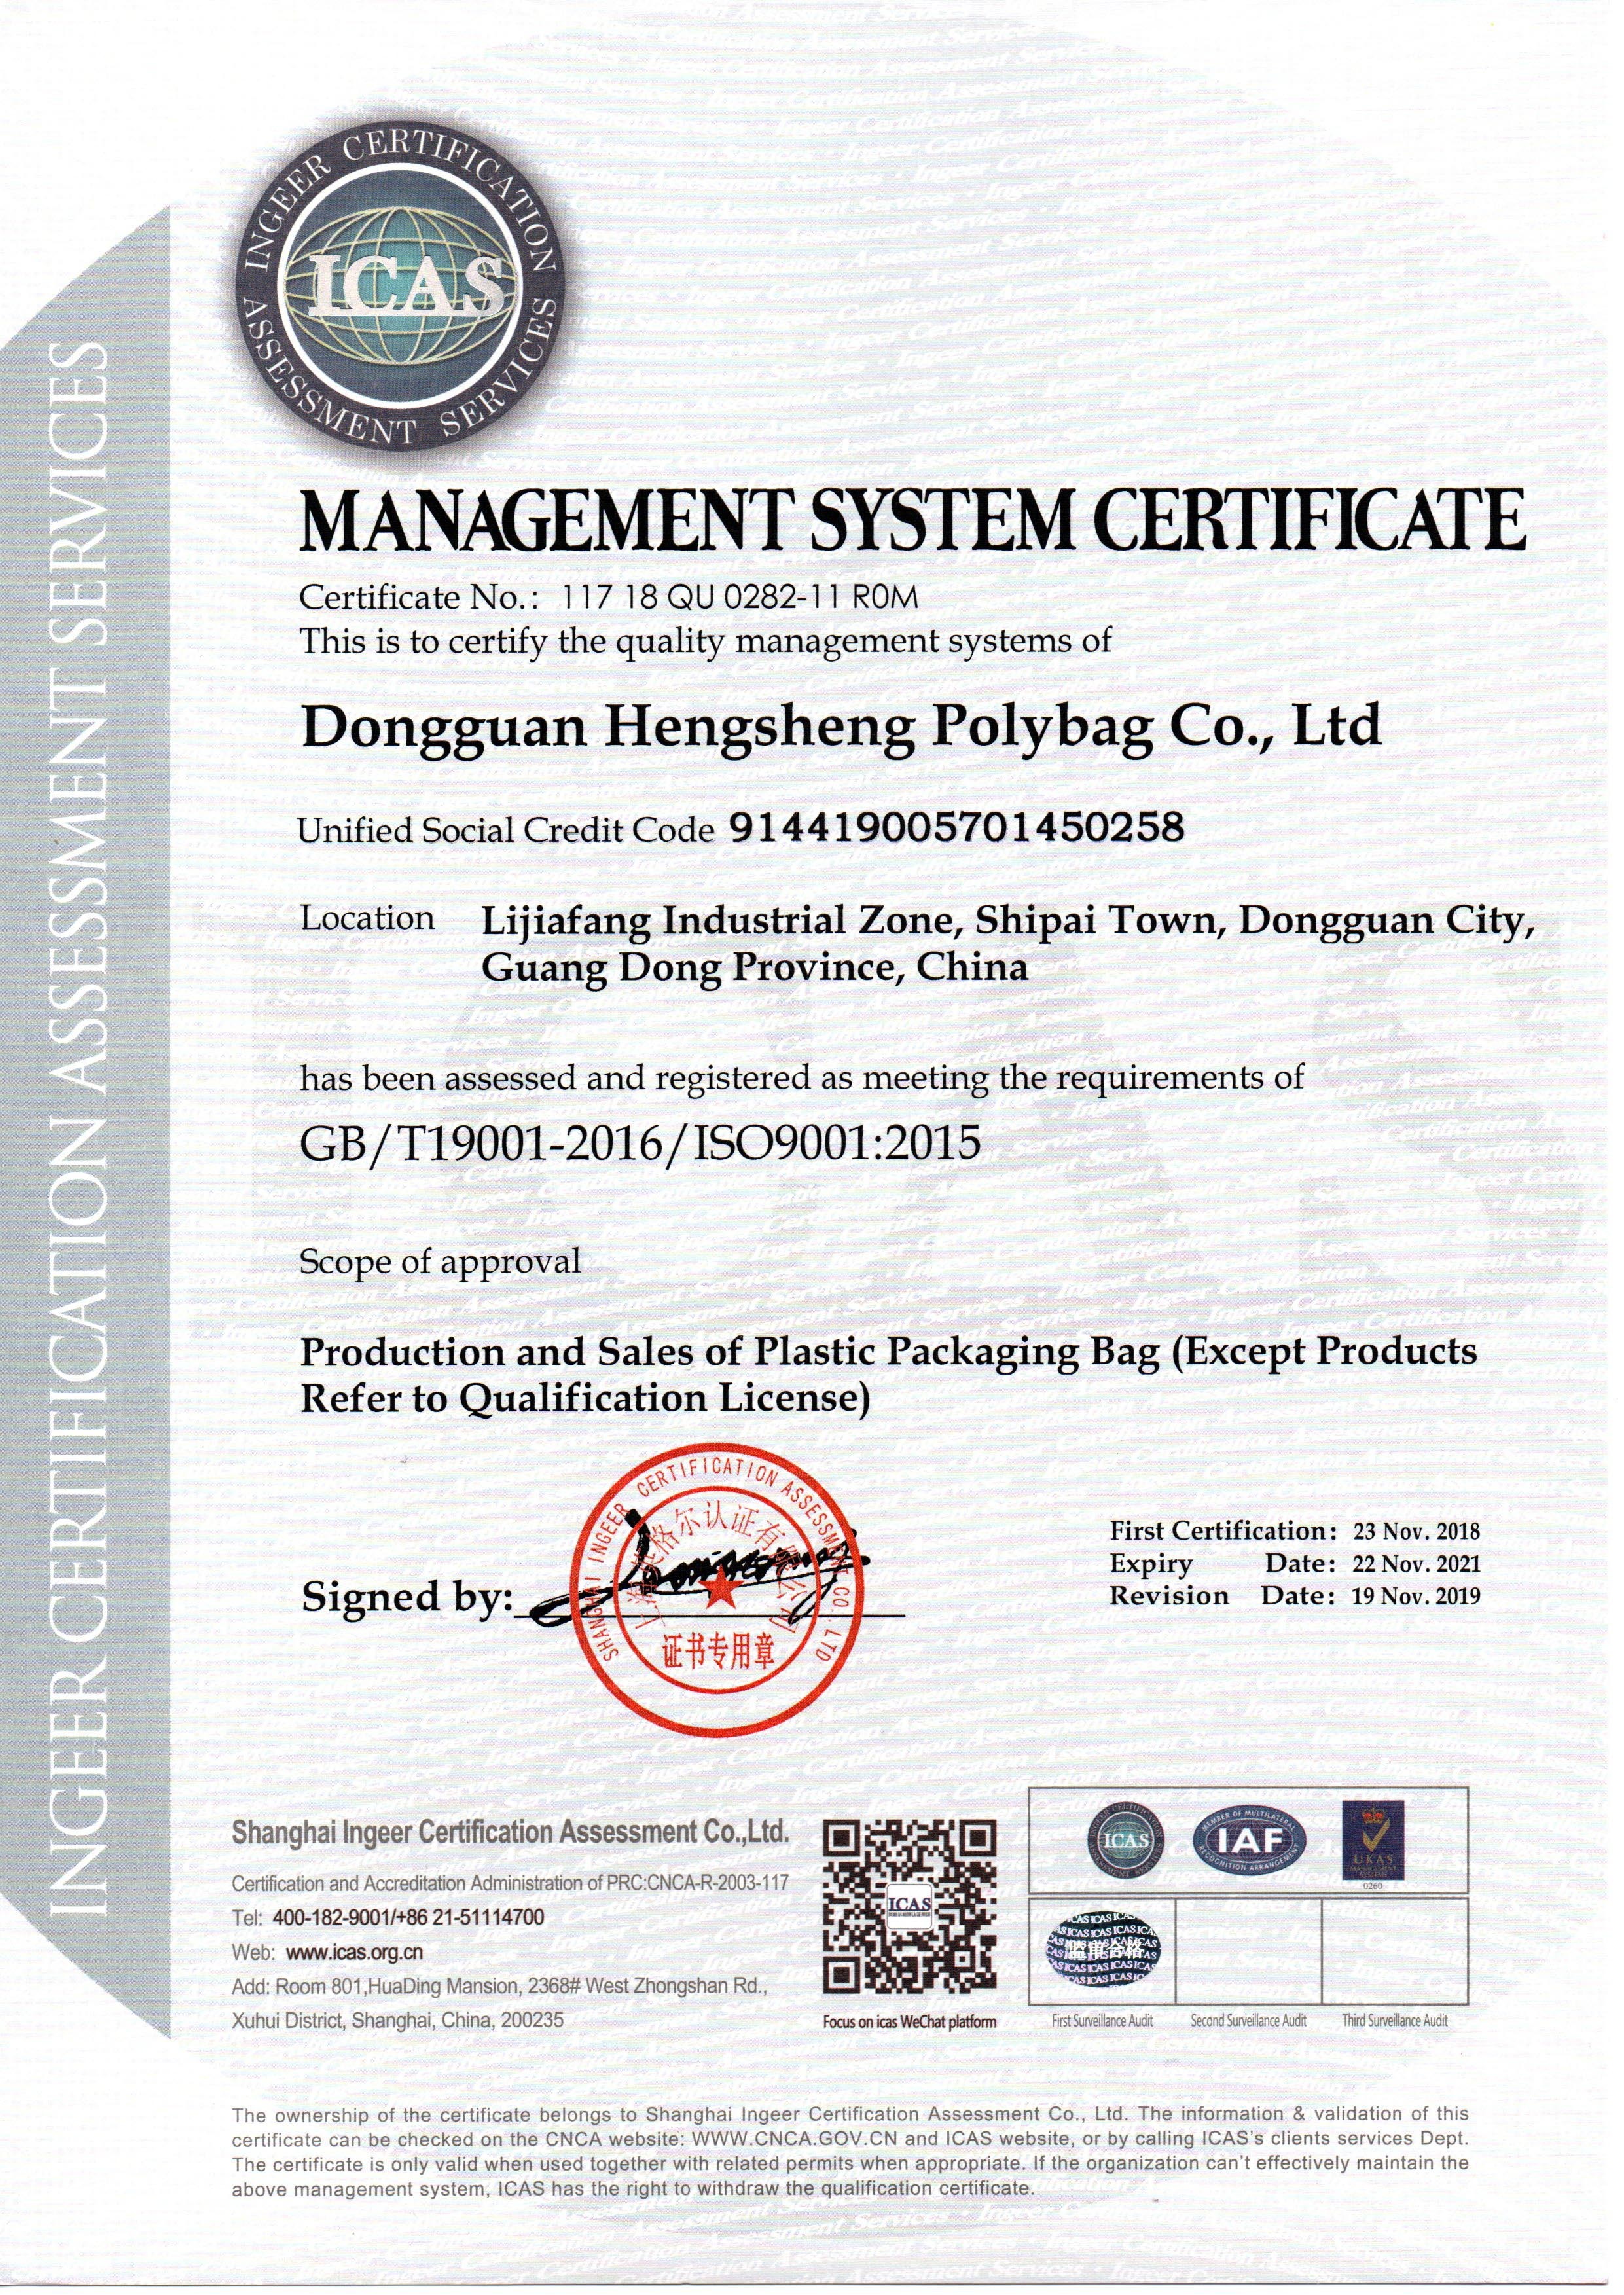 Dongguan Hengsheng Polybag Co., Ltd. Certifications